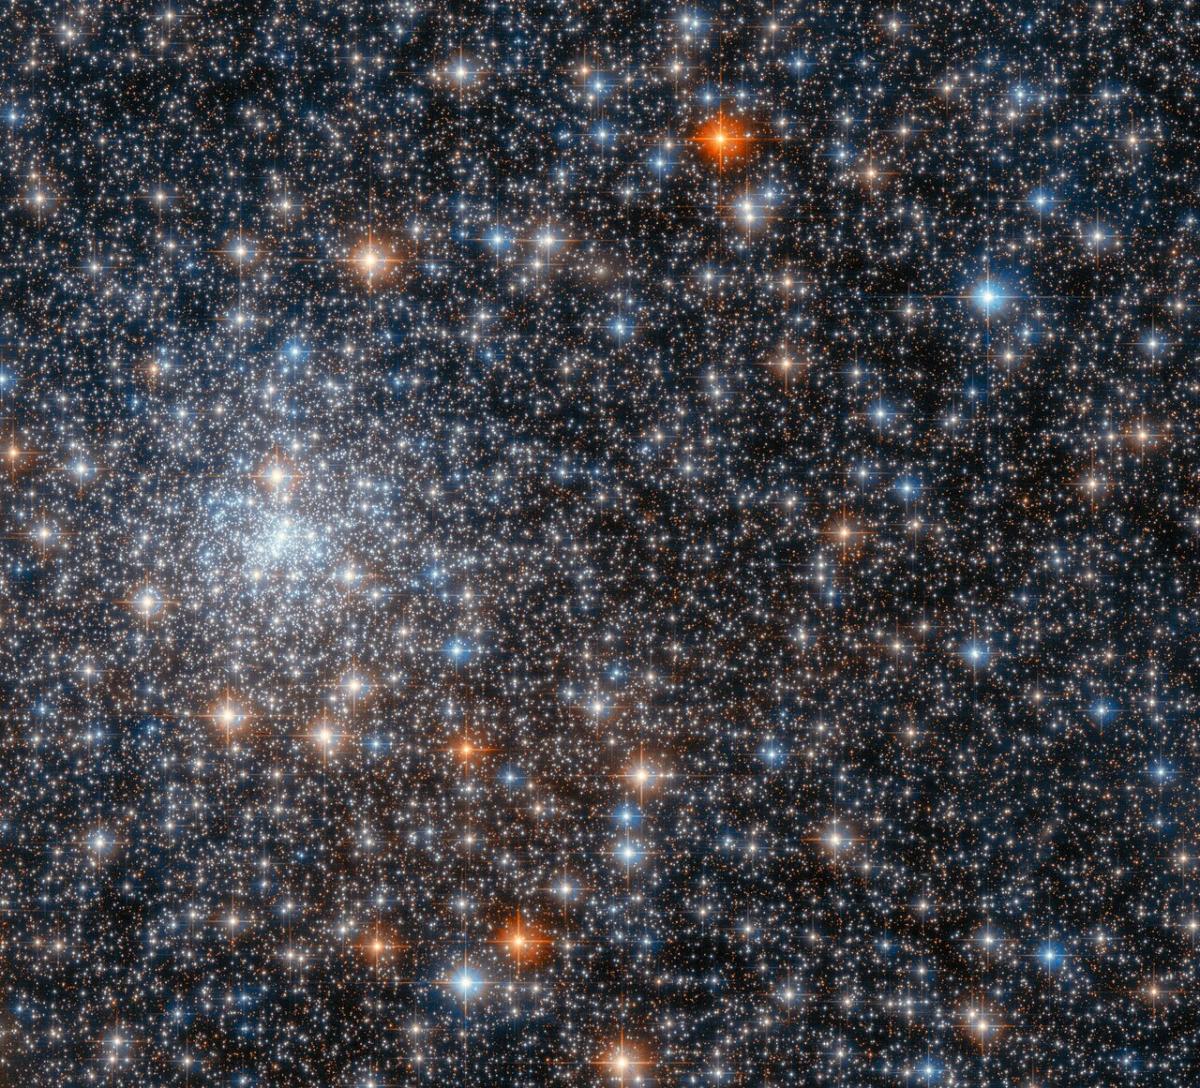 Хаббл сфотографировал шаровое скопление звезд в созвездии Стрельца / фото ESA/Hubble & NASA, R. Cohen